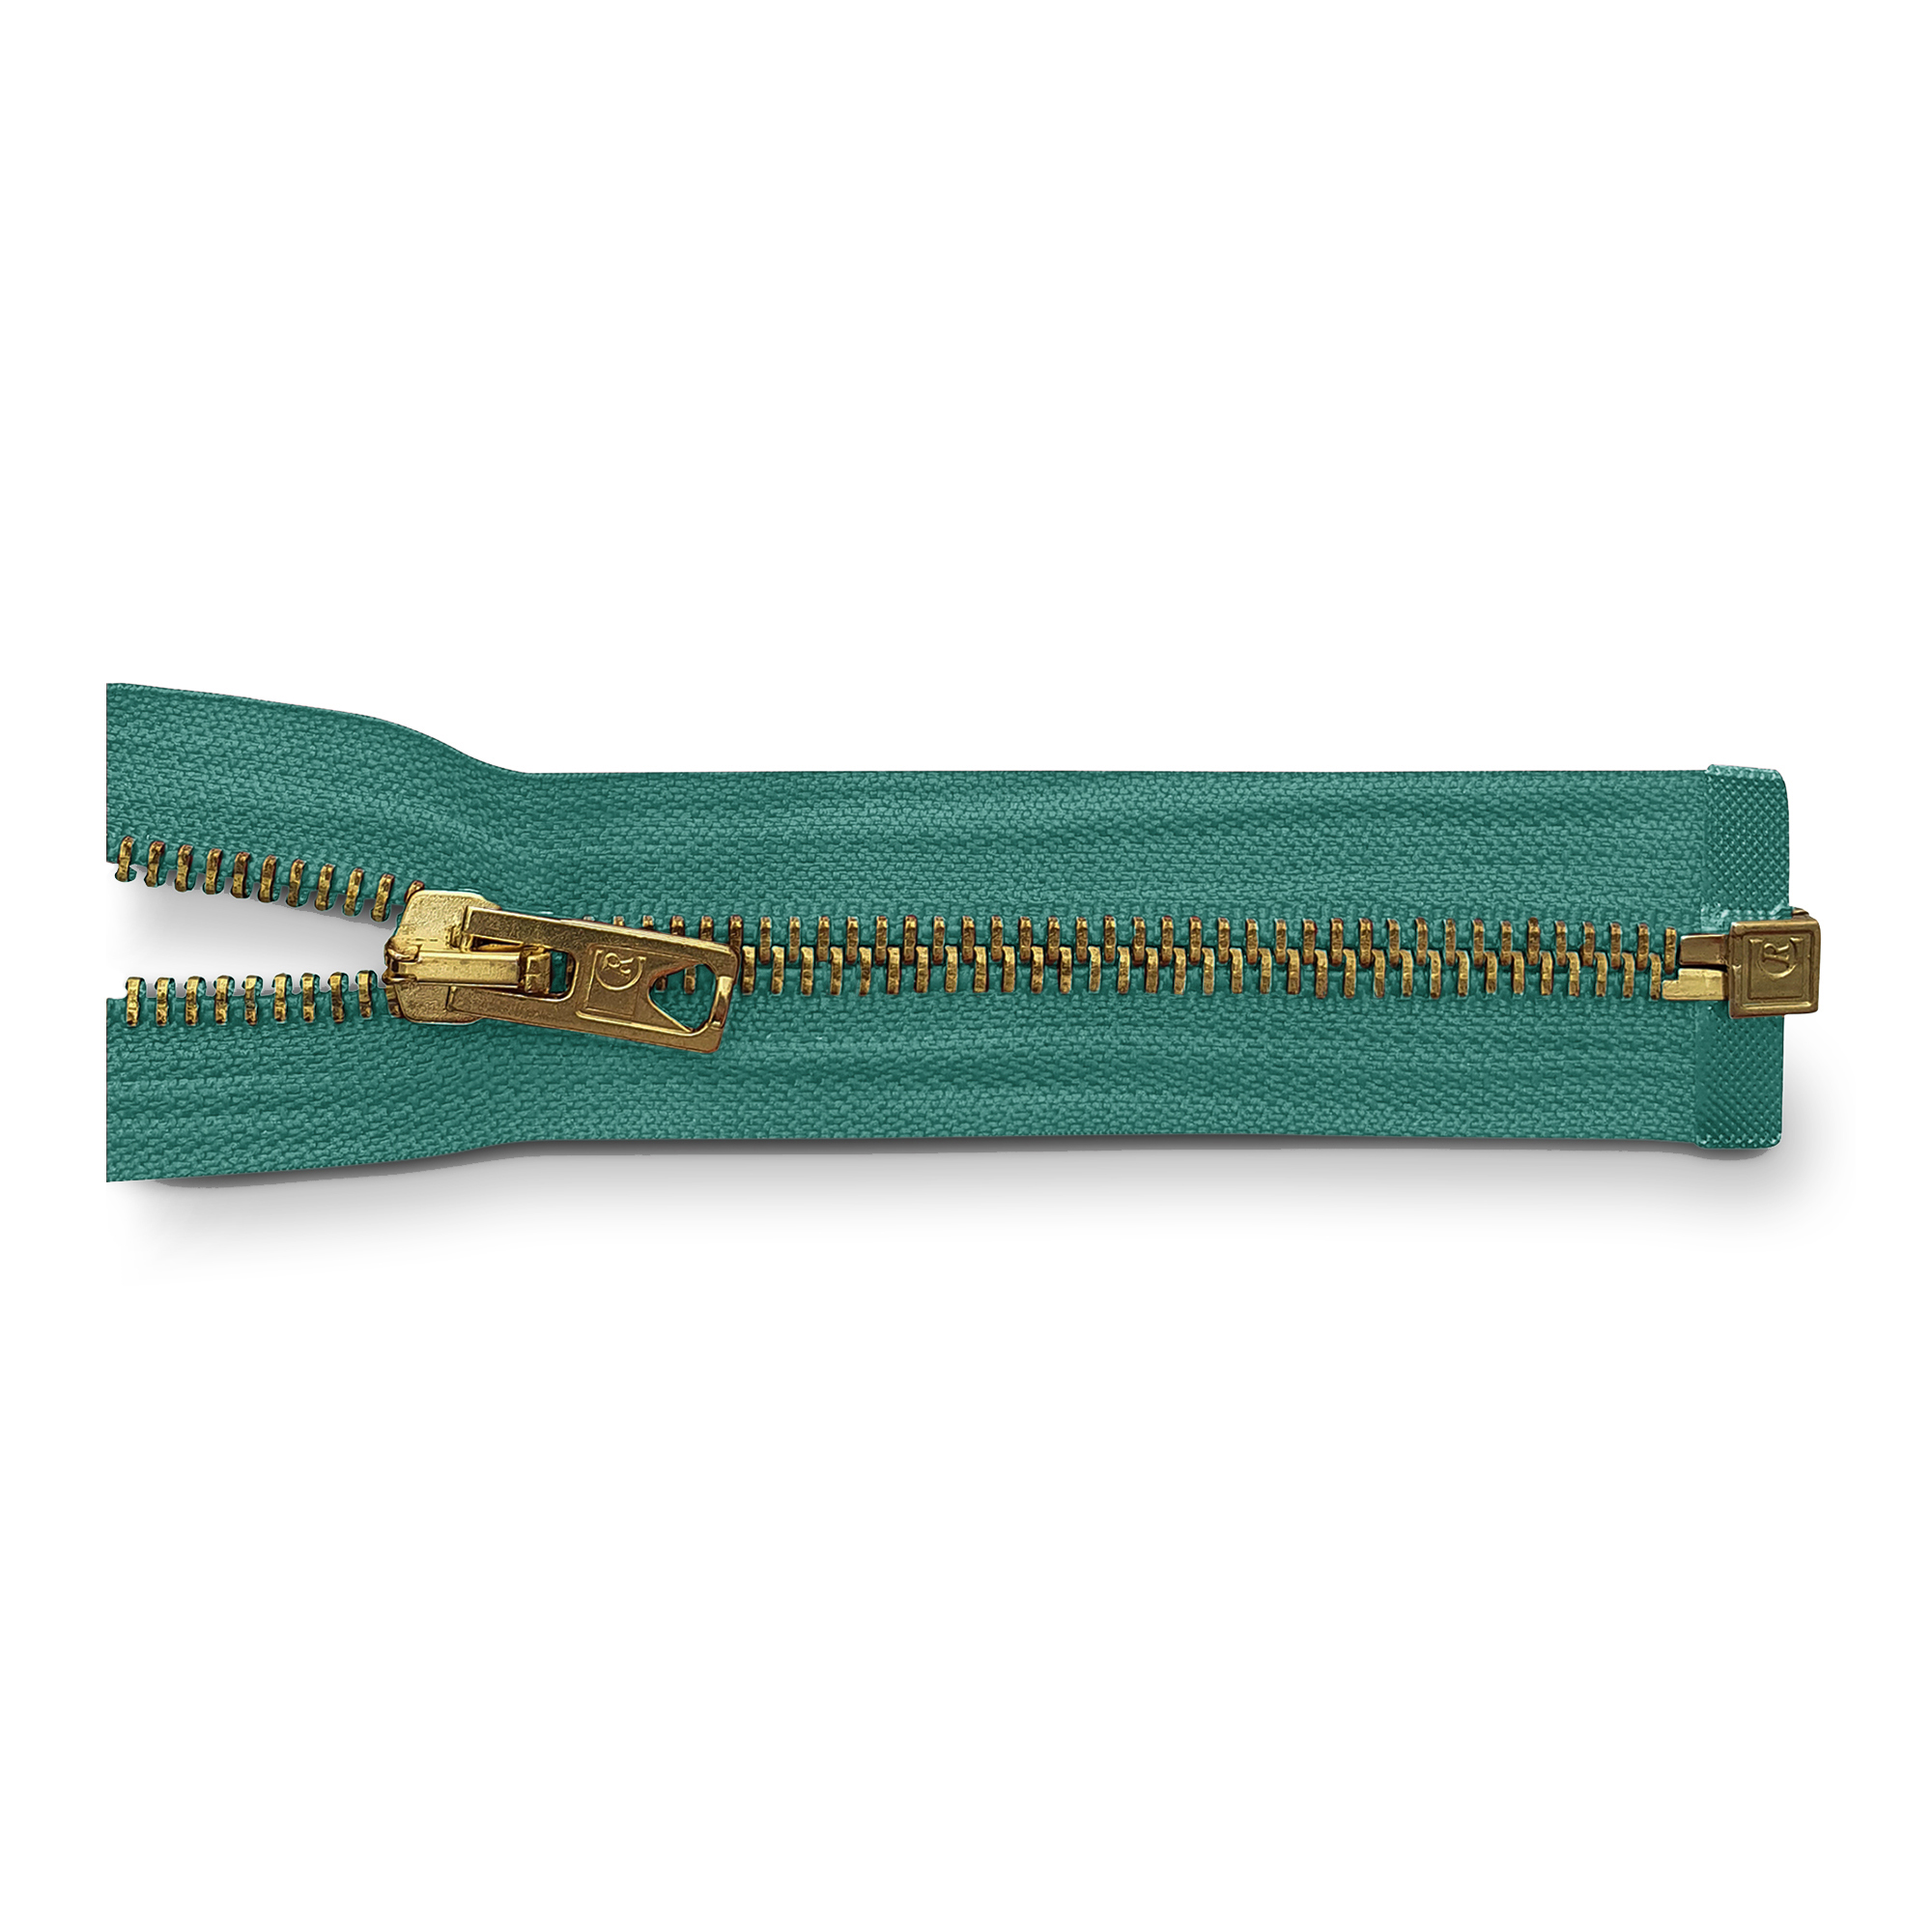 Reißverschluss 70cm, teilbar, Metall goldf. breit, blau-grün, hochwertiger Marken-Reißverschluss von Rubi/Barcelona